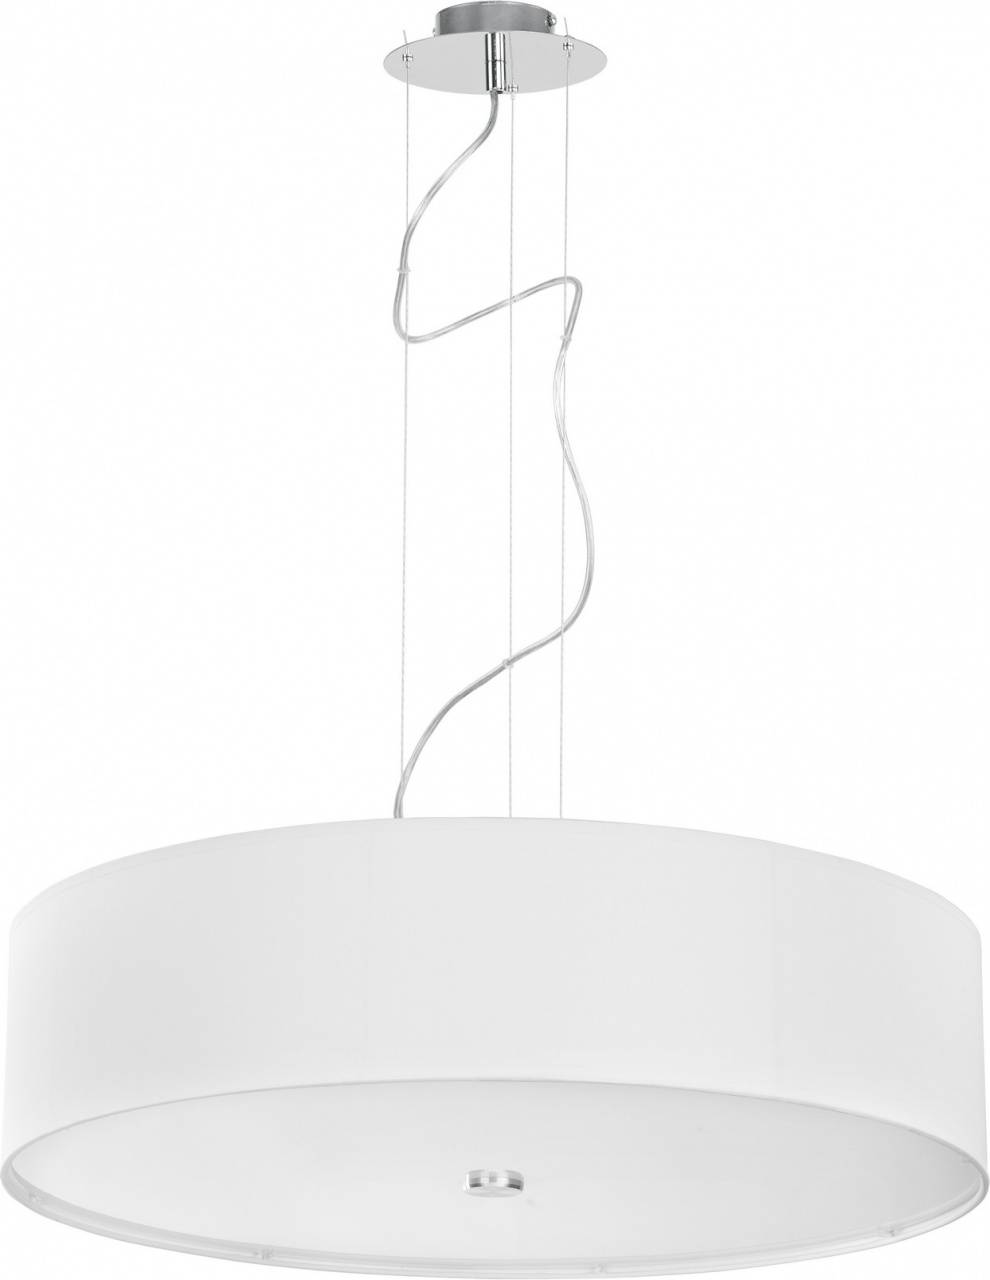 Подвесной светильник Nowodvorski Viviane 6772, диаметр 64 см, хром/белый